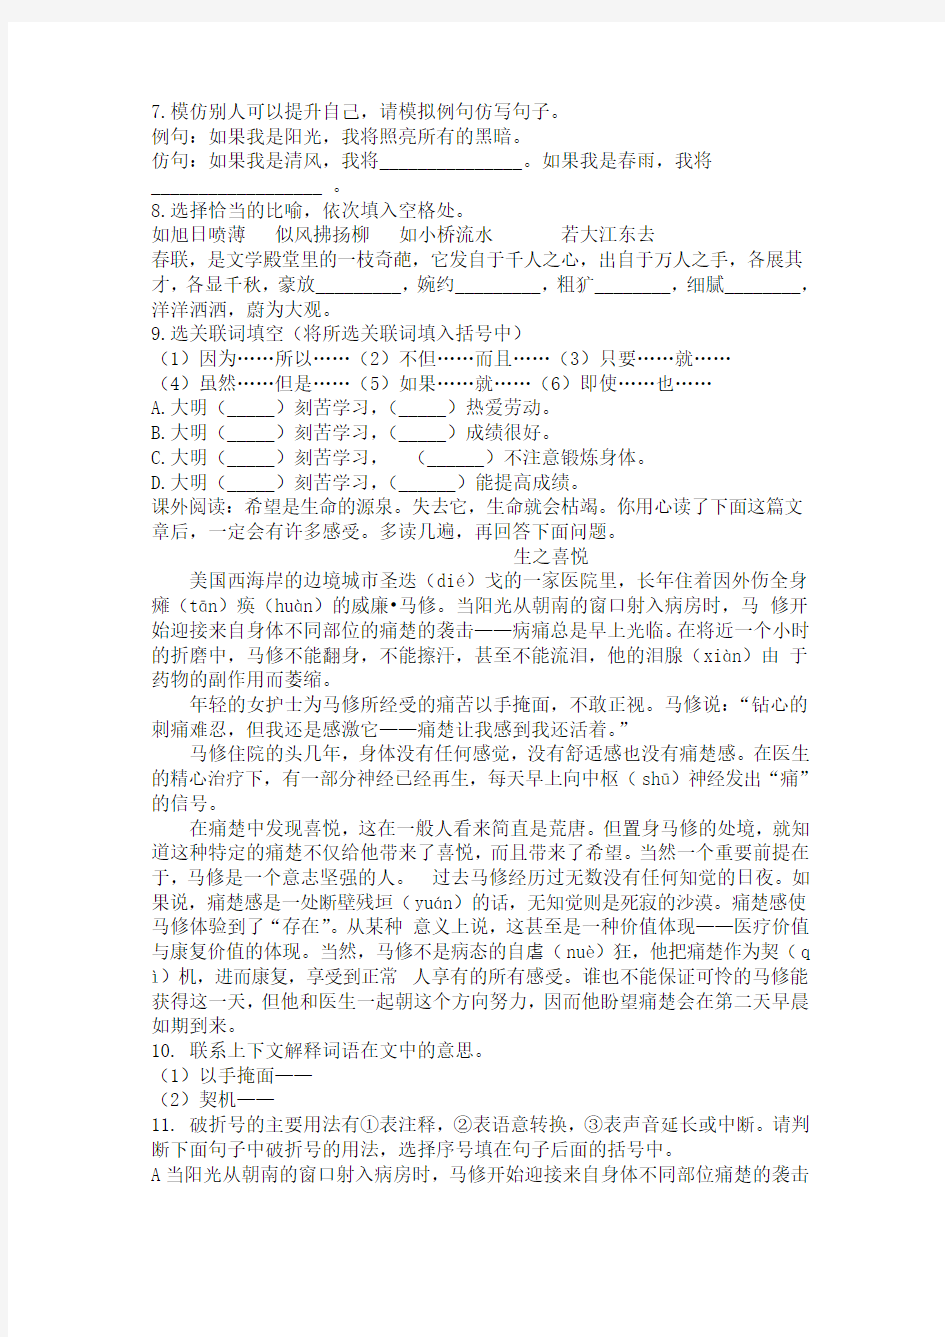 北京东直门中学初一新生分班(摸底)语文考试模拟试卷(10套试卷带答案解析)